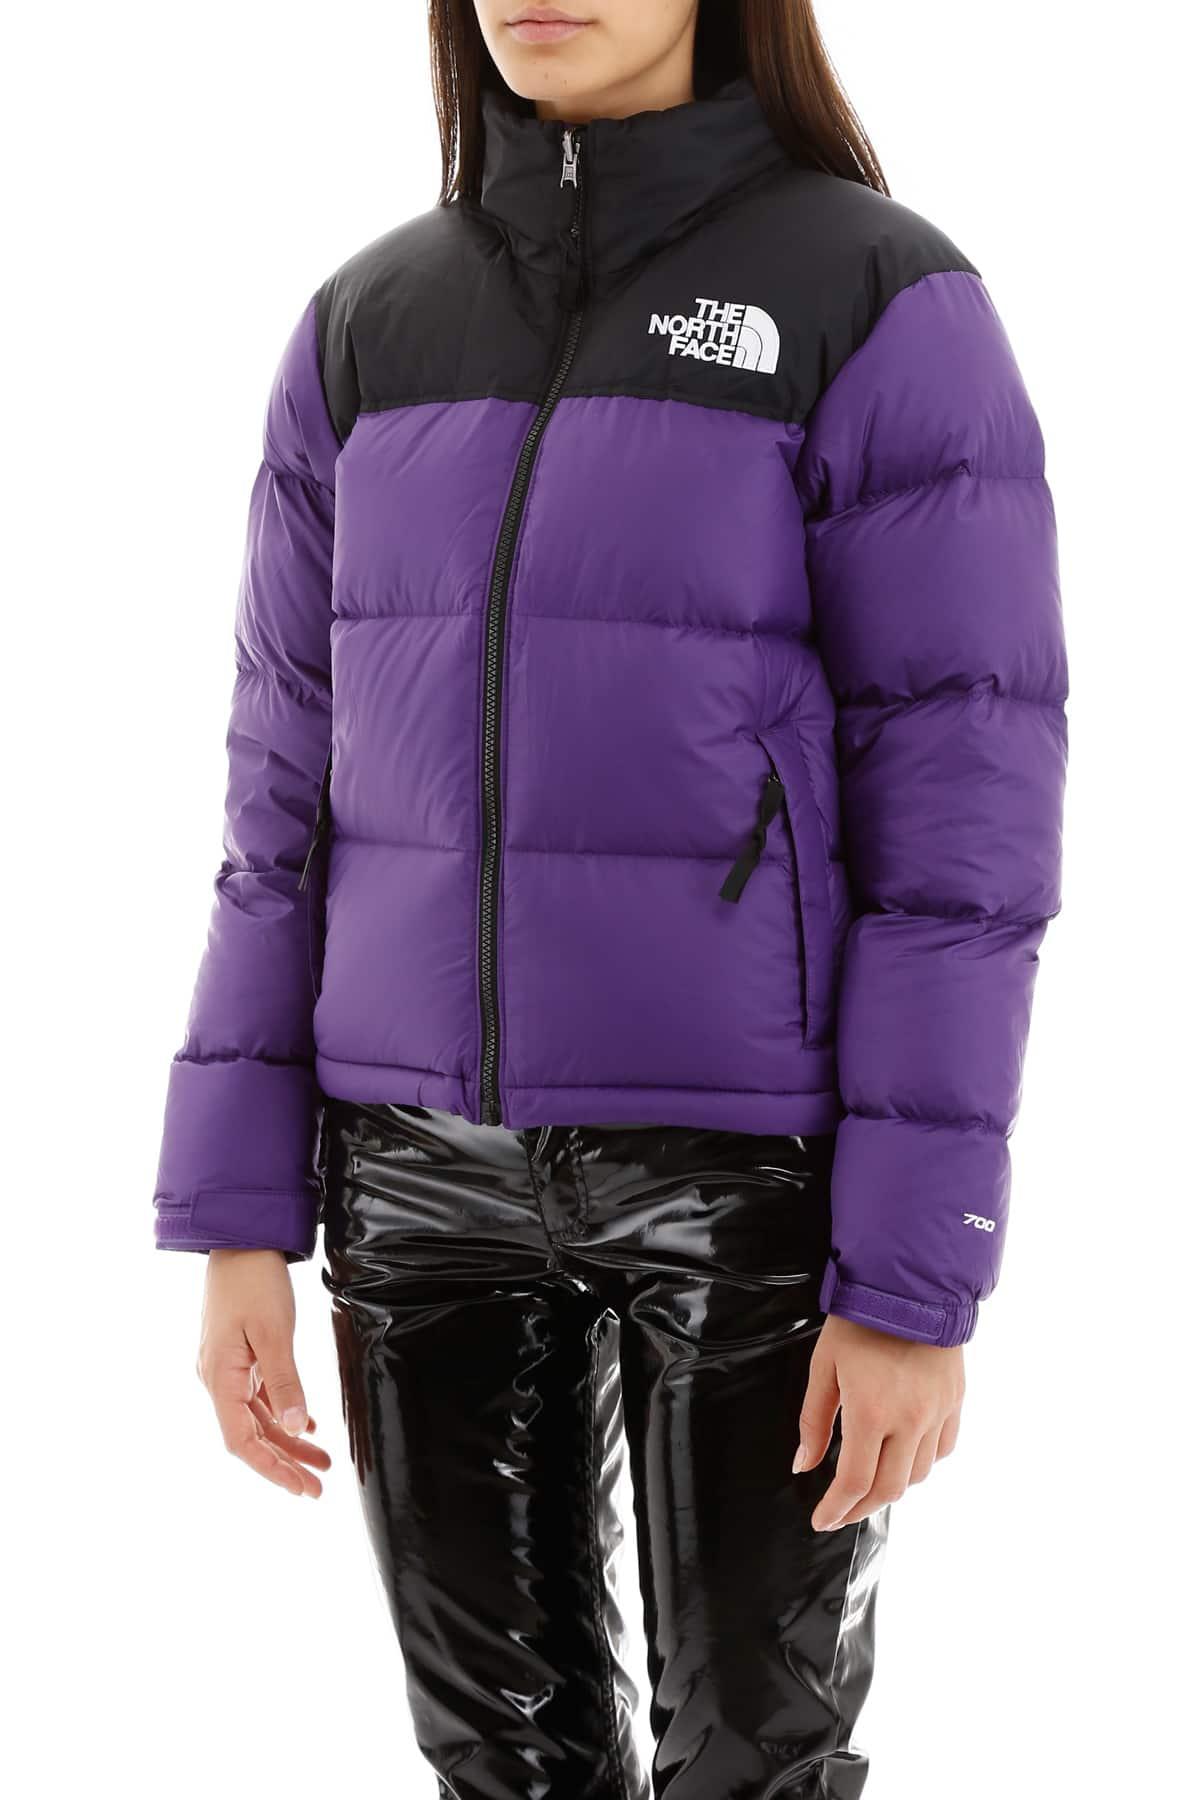 north face purple nuptse jacket